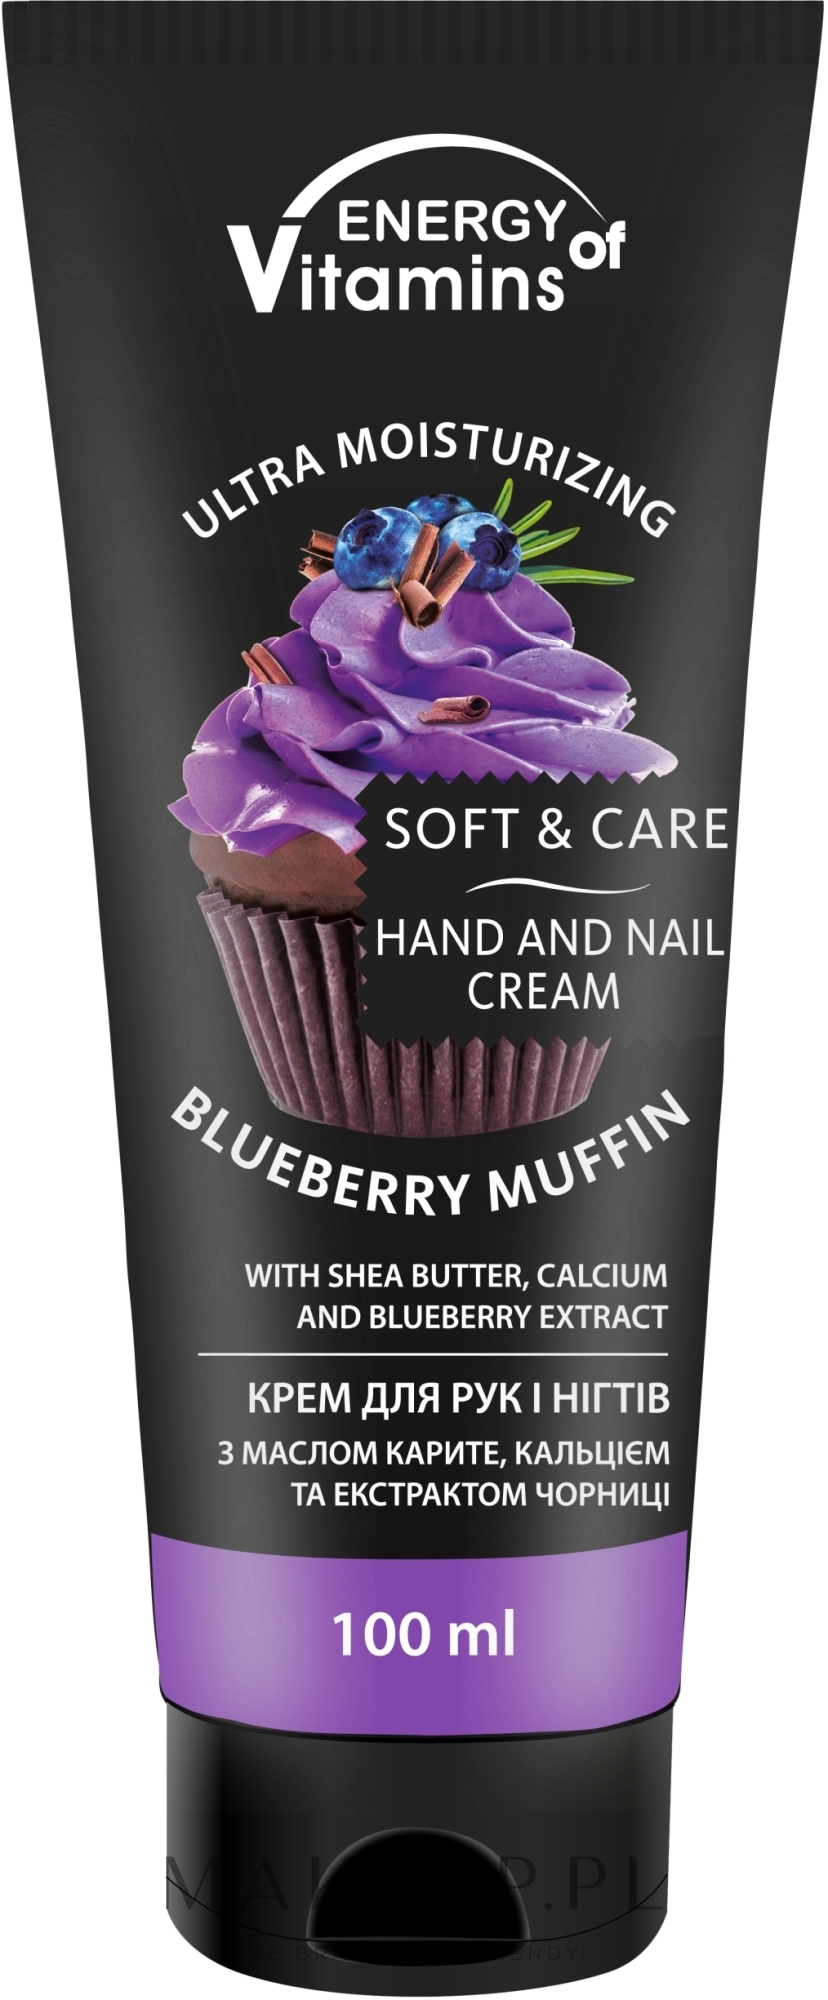 Krem do rąk i paznokci - Energy of Vitamins Soft & Care Blueberry Muffin Cream For Hands And Nails — Zdjęcie 100 ml